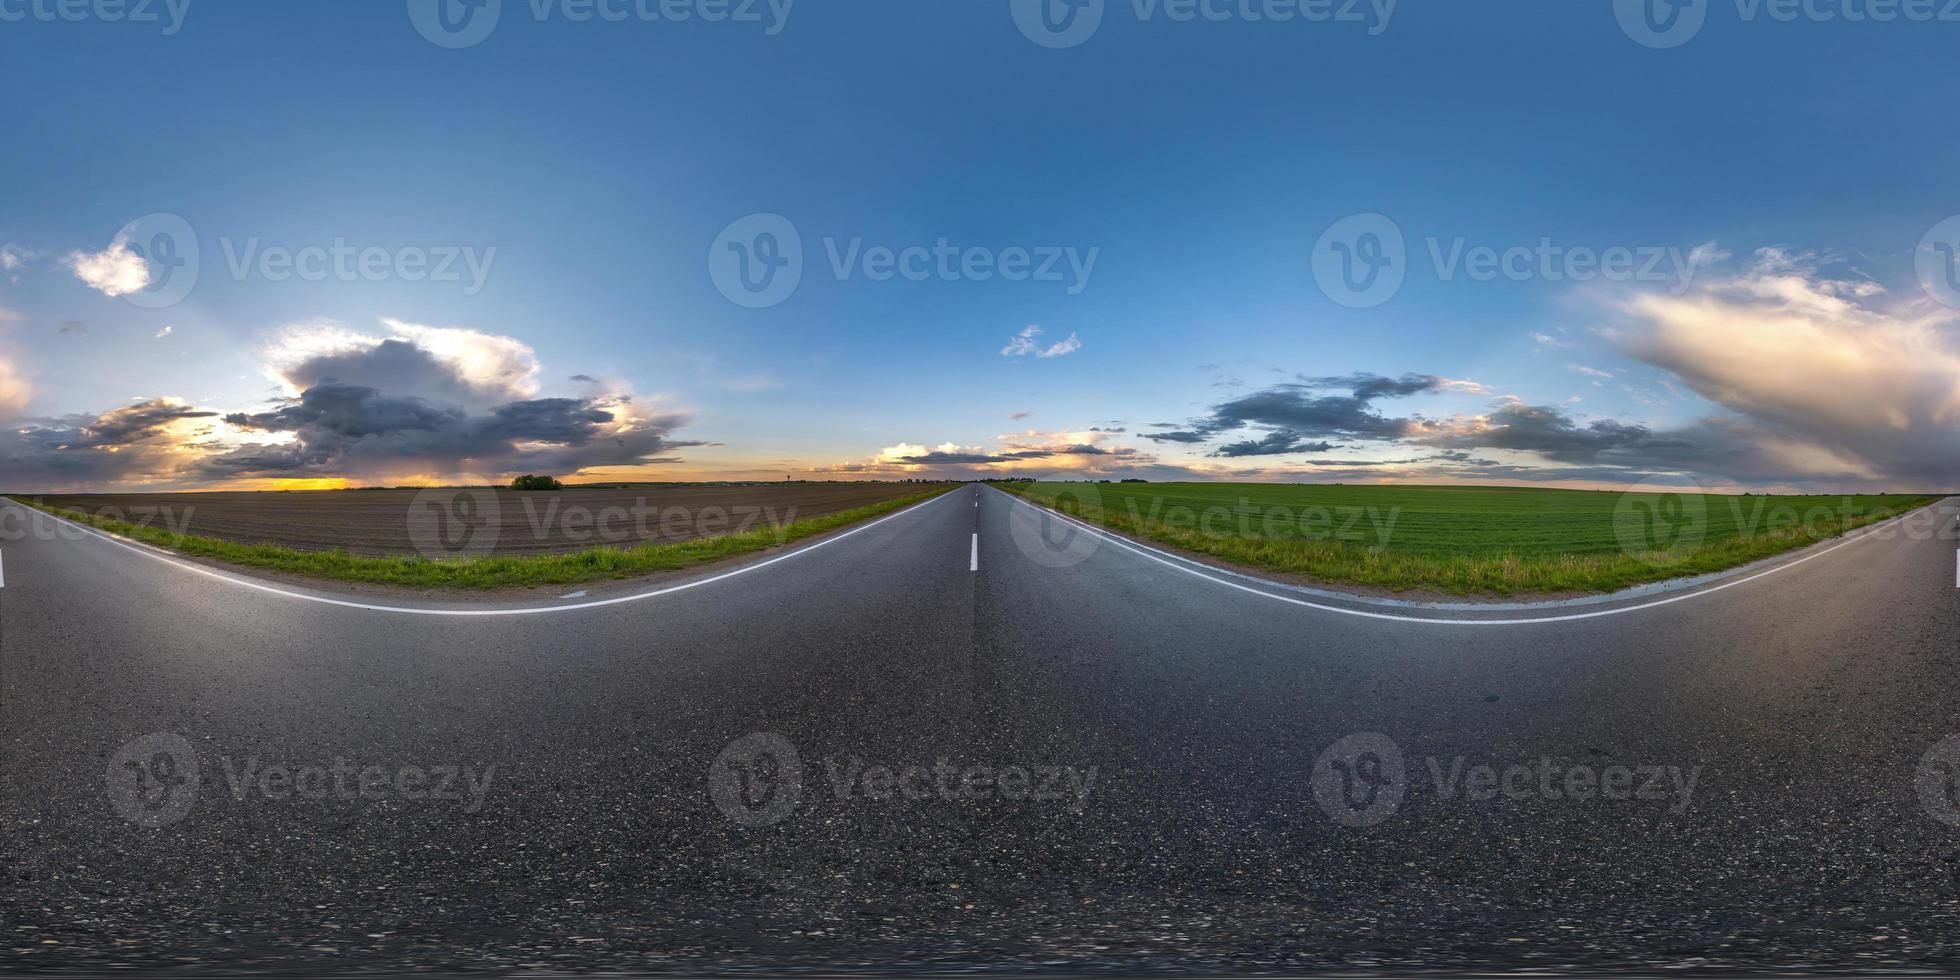 hel sfärisk hdri sömlös panorama 360 graders vinkelvy på våt trafikfri asfaltväg bland fält på kvällen efter storm med molnig himmel i ekvirektangulär projektion, vr ar innehåll foto